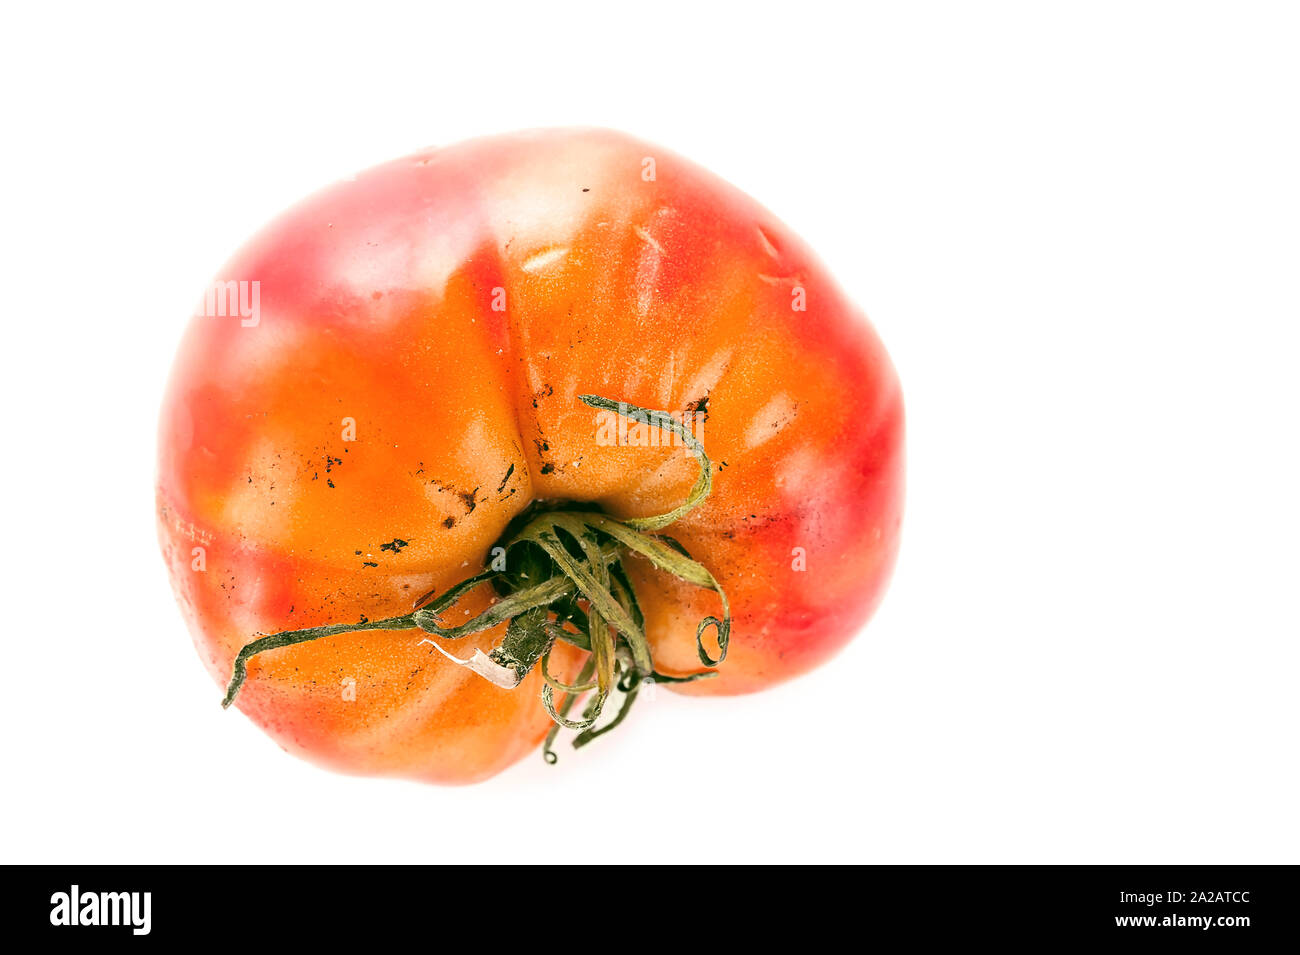 Faulen, verwöhnten Tomate mit kelchblätter oder Kelch, ungleichmäßiger Reifung und Stockflecken auf der Haut isoliert auf weißem Hintergrund. Stockfoto